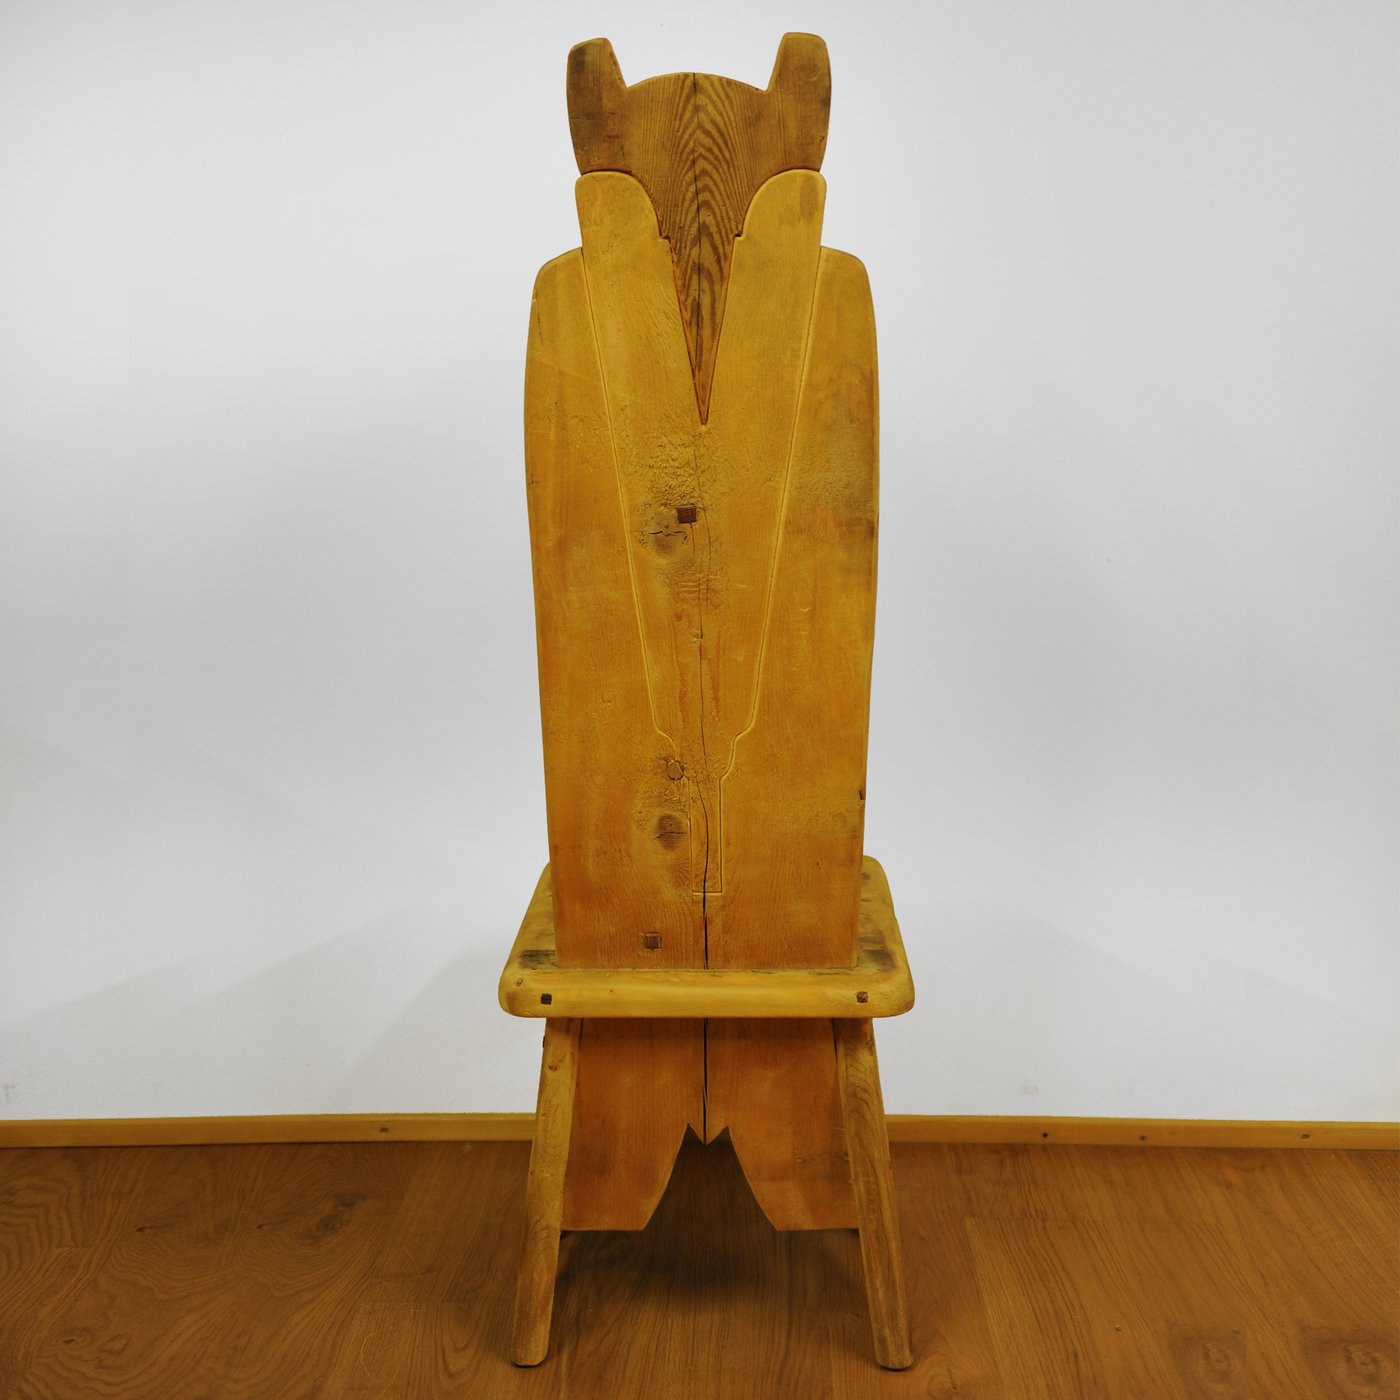 Bear Throne Chair - Alternative view 1